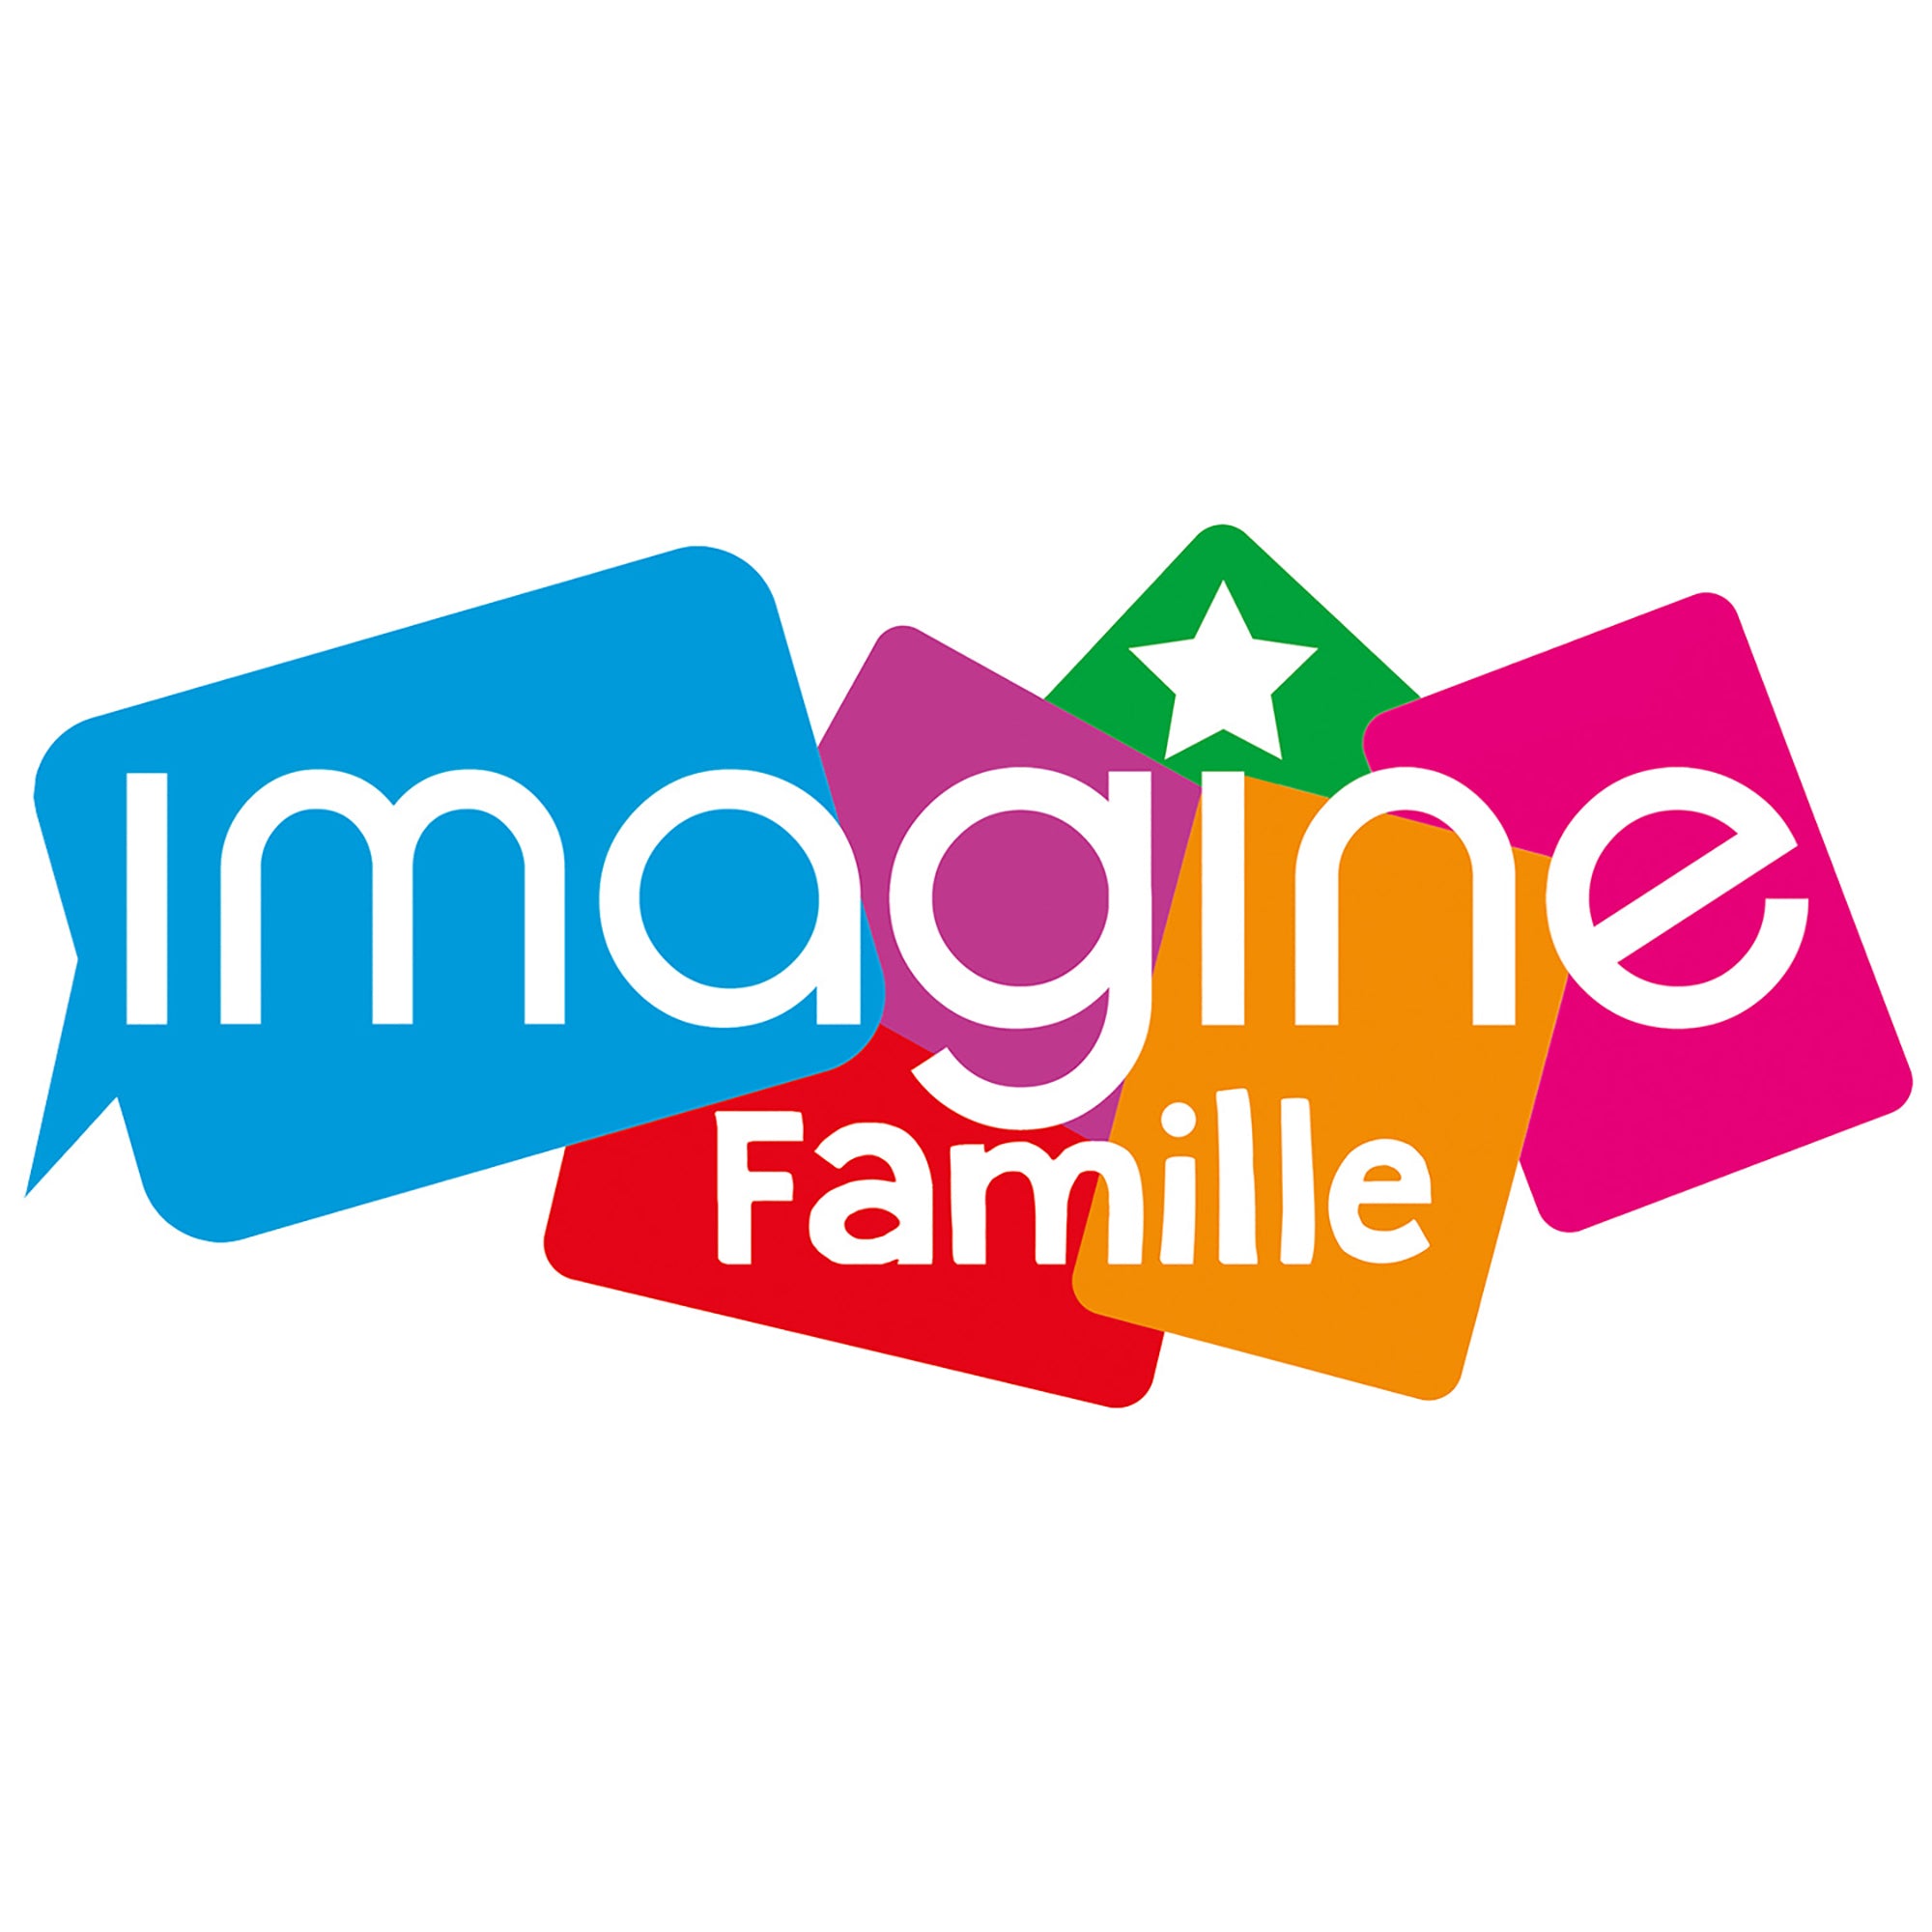 Imagine - Famille Version Française 8+